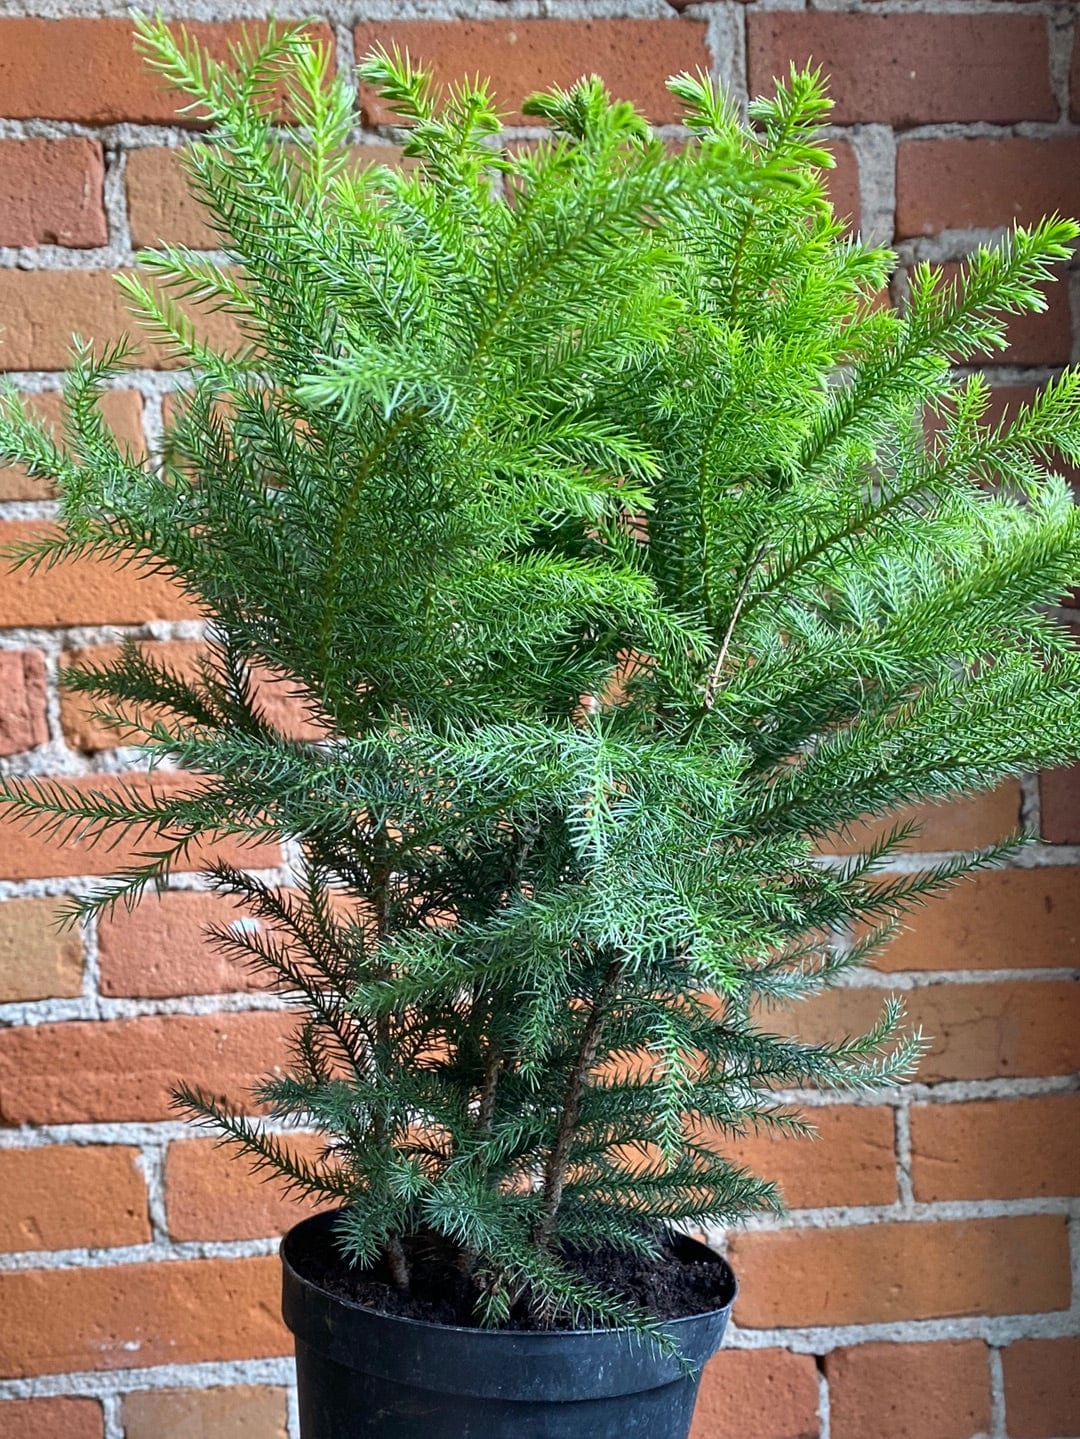 Plant Goals Plant Shop 6" Norfolk Pine